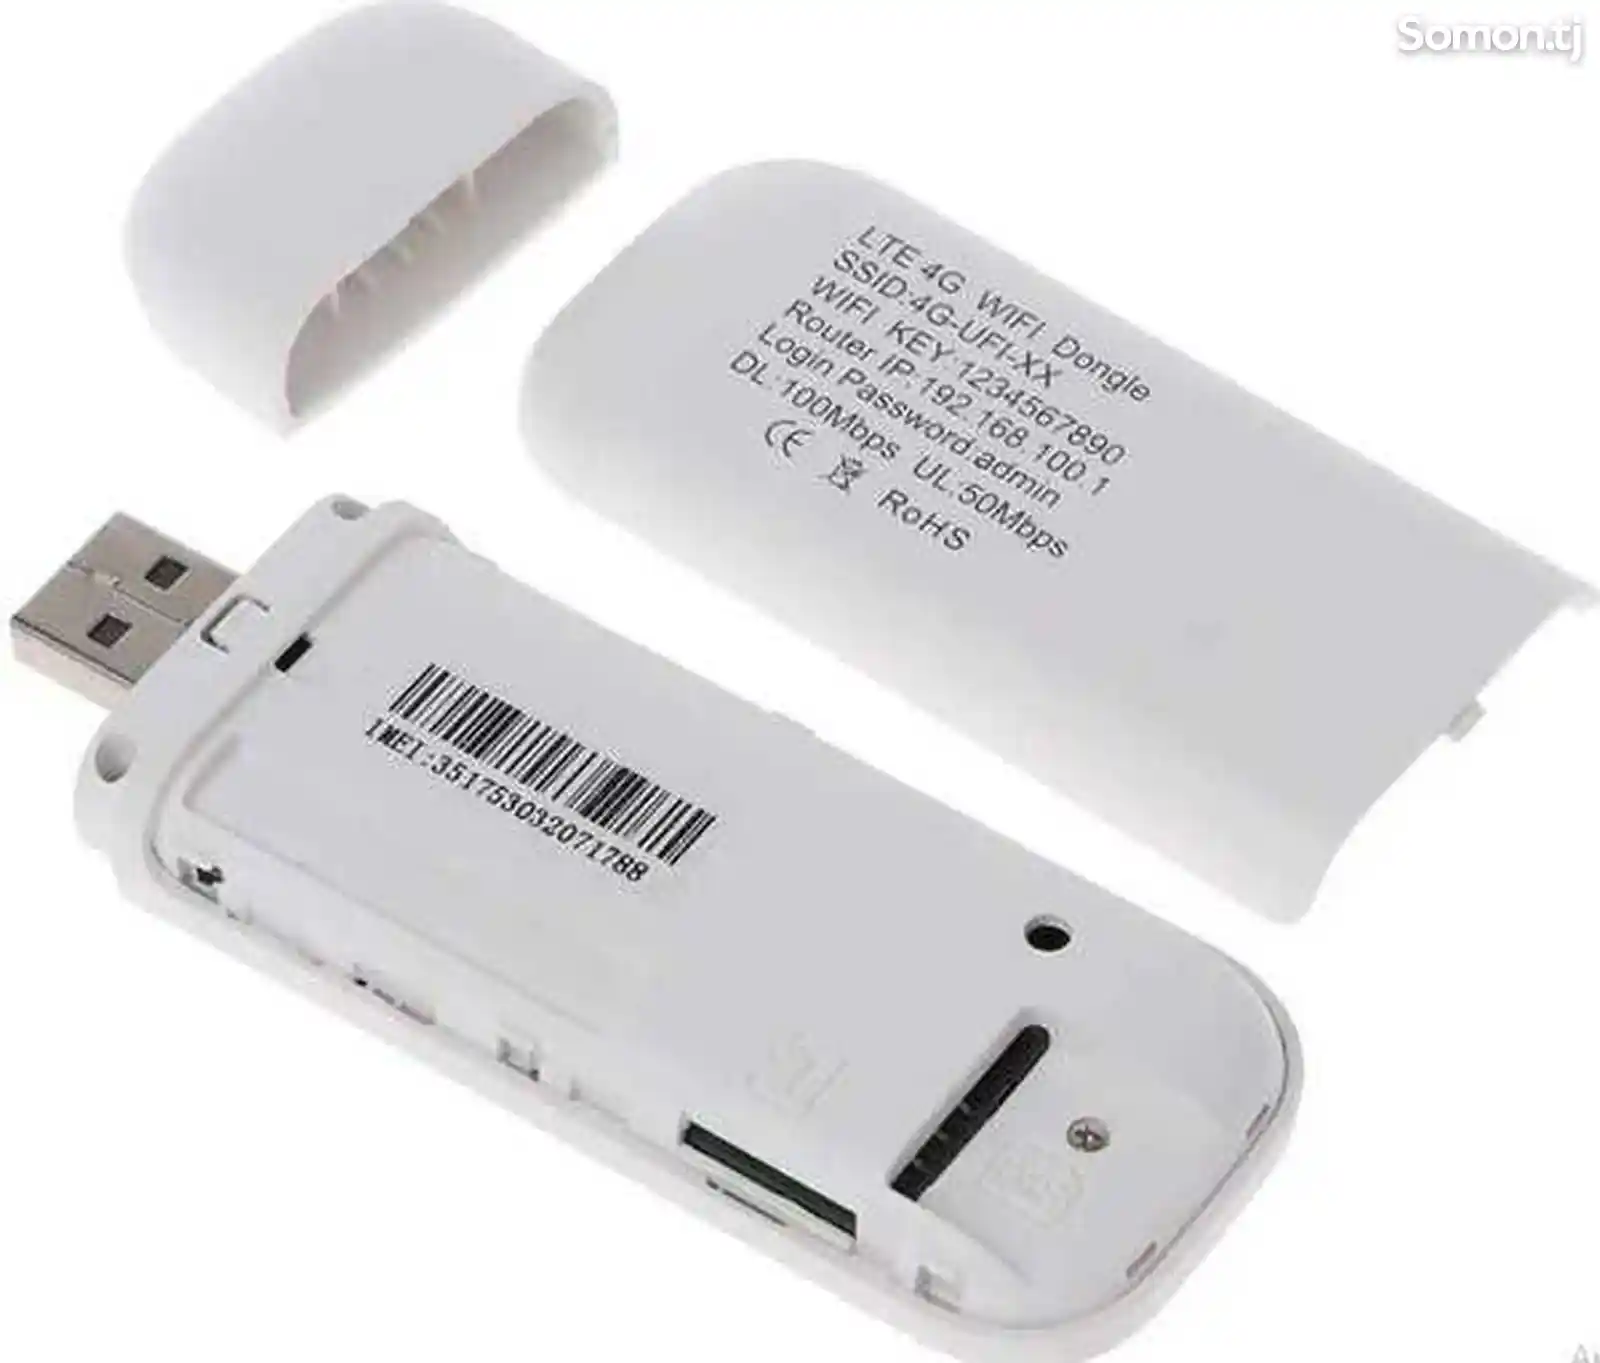 Модем роутер 4G LTE / USB универсальная патходит люби симк Тачикистан и друг стр-4